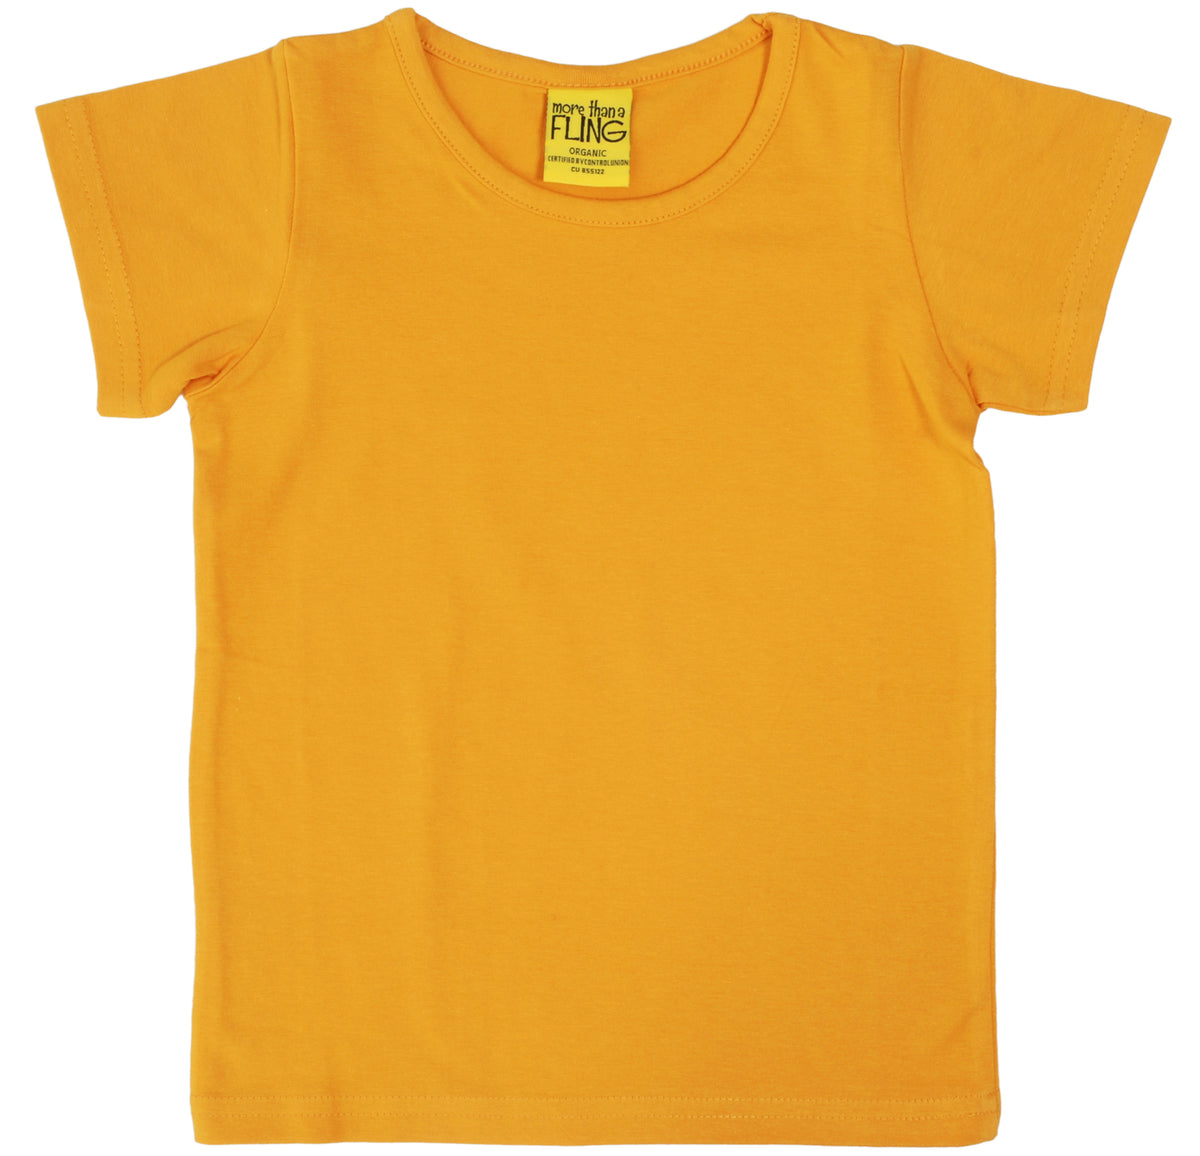 More Than A Fling T Shirt Mustard - Shirt Mosterd Geel